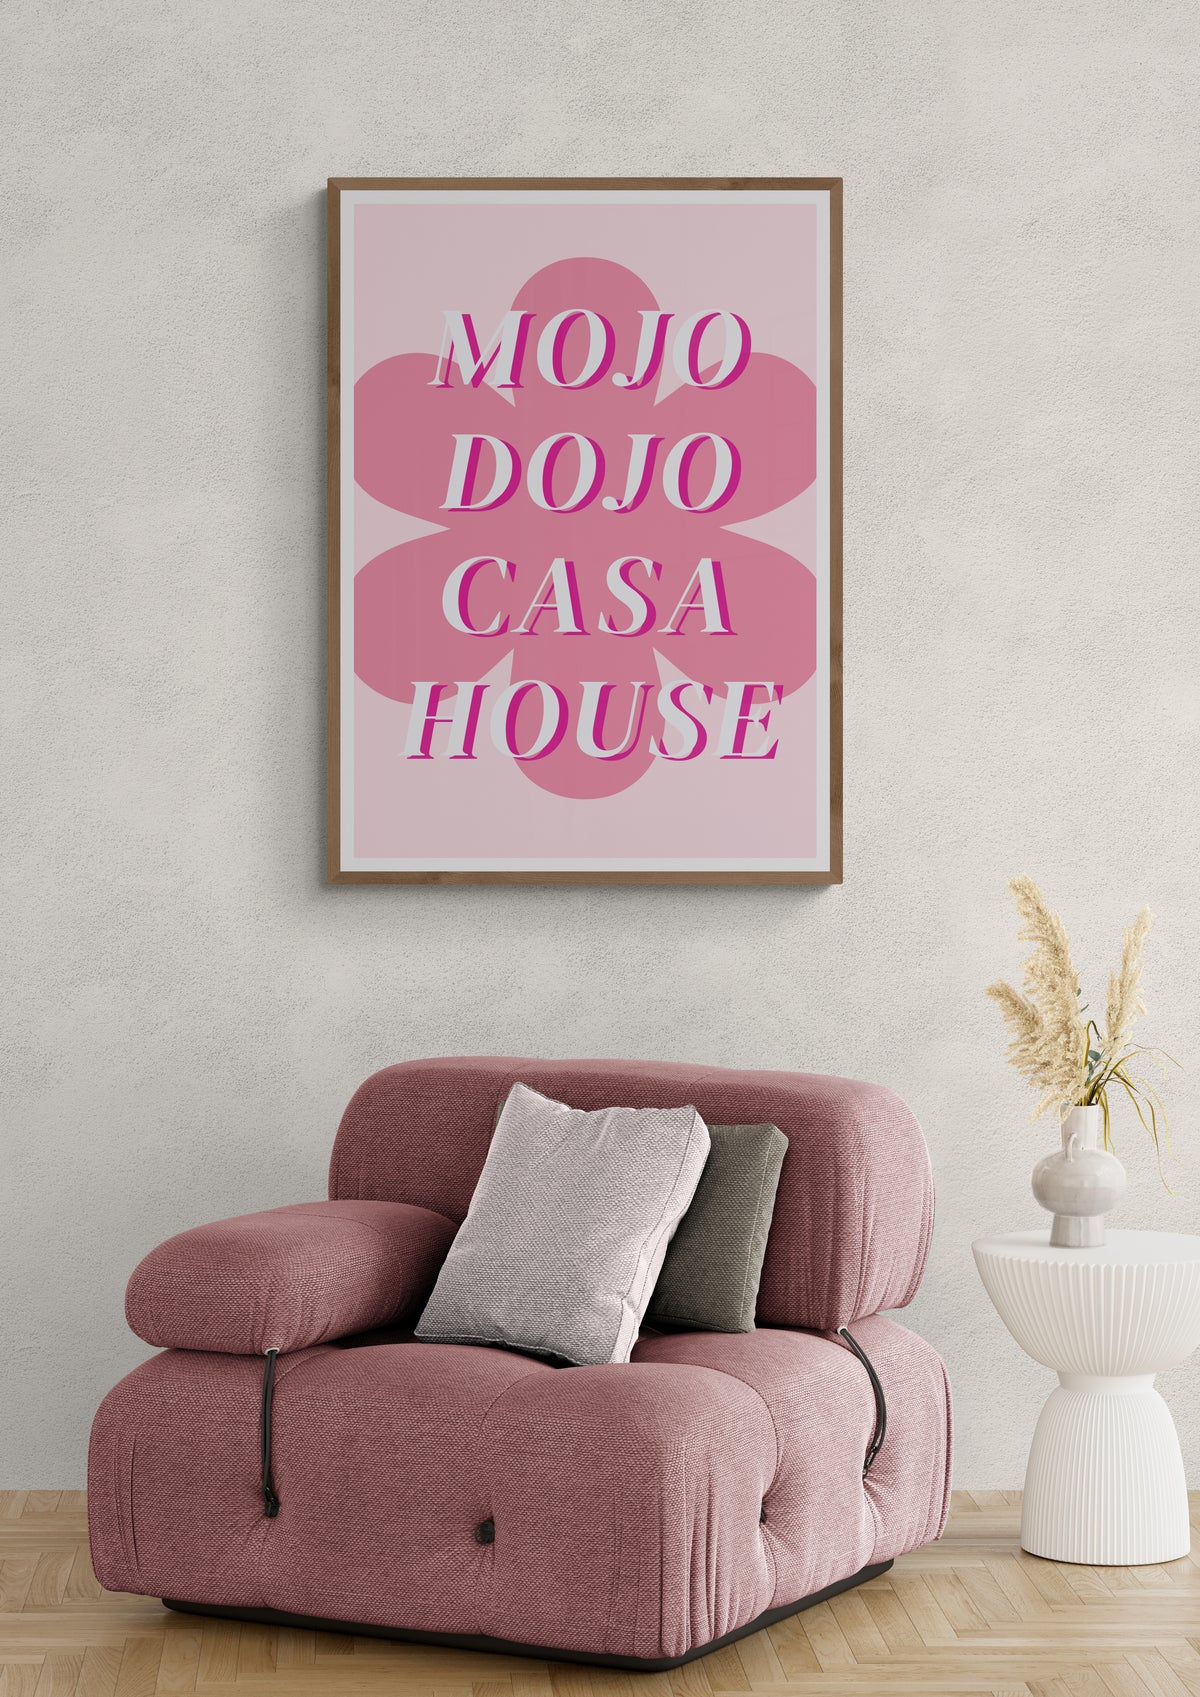 Mojo Dojo Casa House Poster